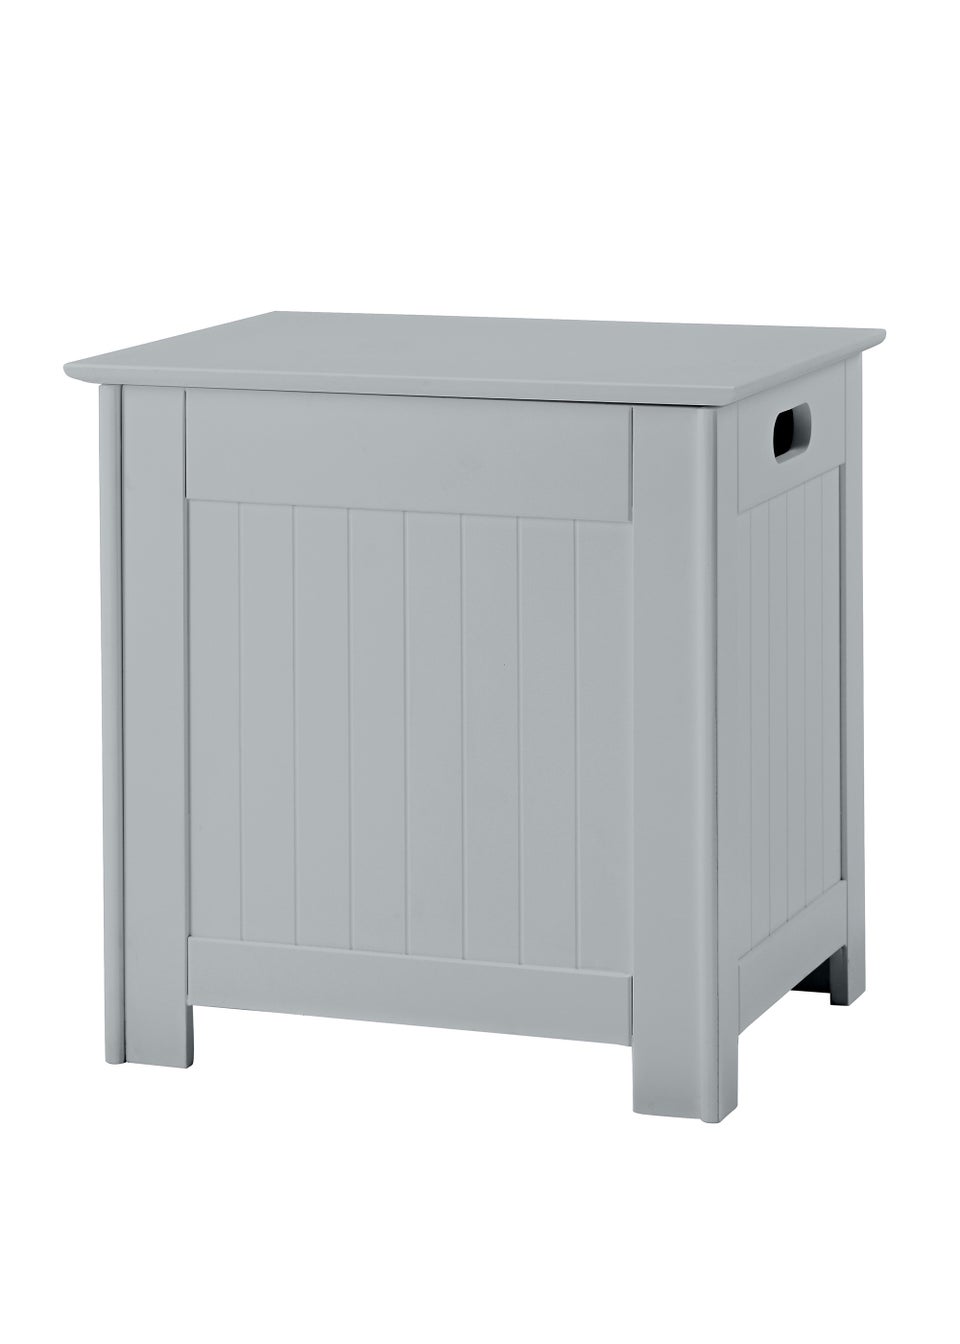 LPD Furniture Alaska Laundry Cabinet Grey (510x400x510mm)